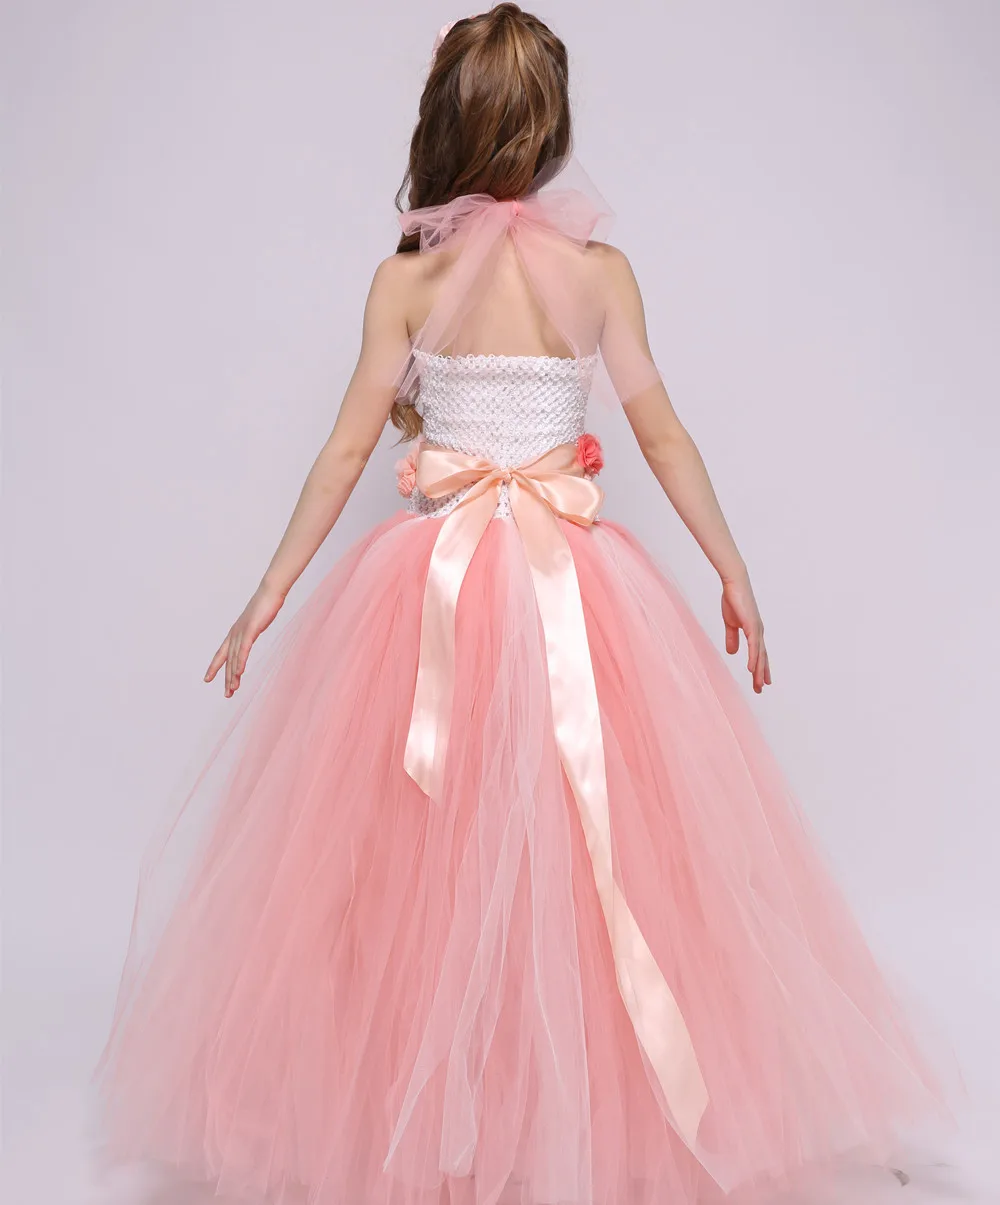 Персиковое платье с цветочным узором для девочек на свадьбу; платье принцессы с фатиновой юбкой-пачкой; элегантное праздничное платье для девочек на День рождения; летняя детская одежда